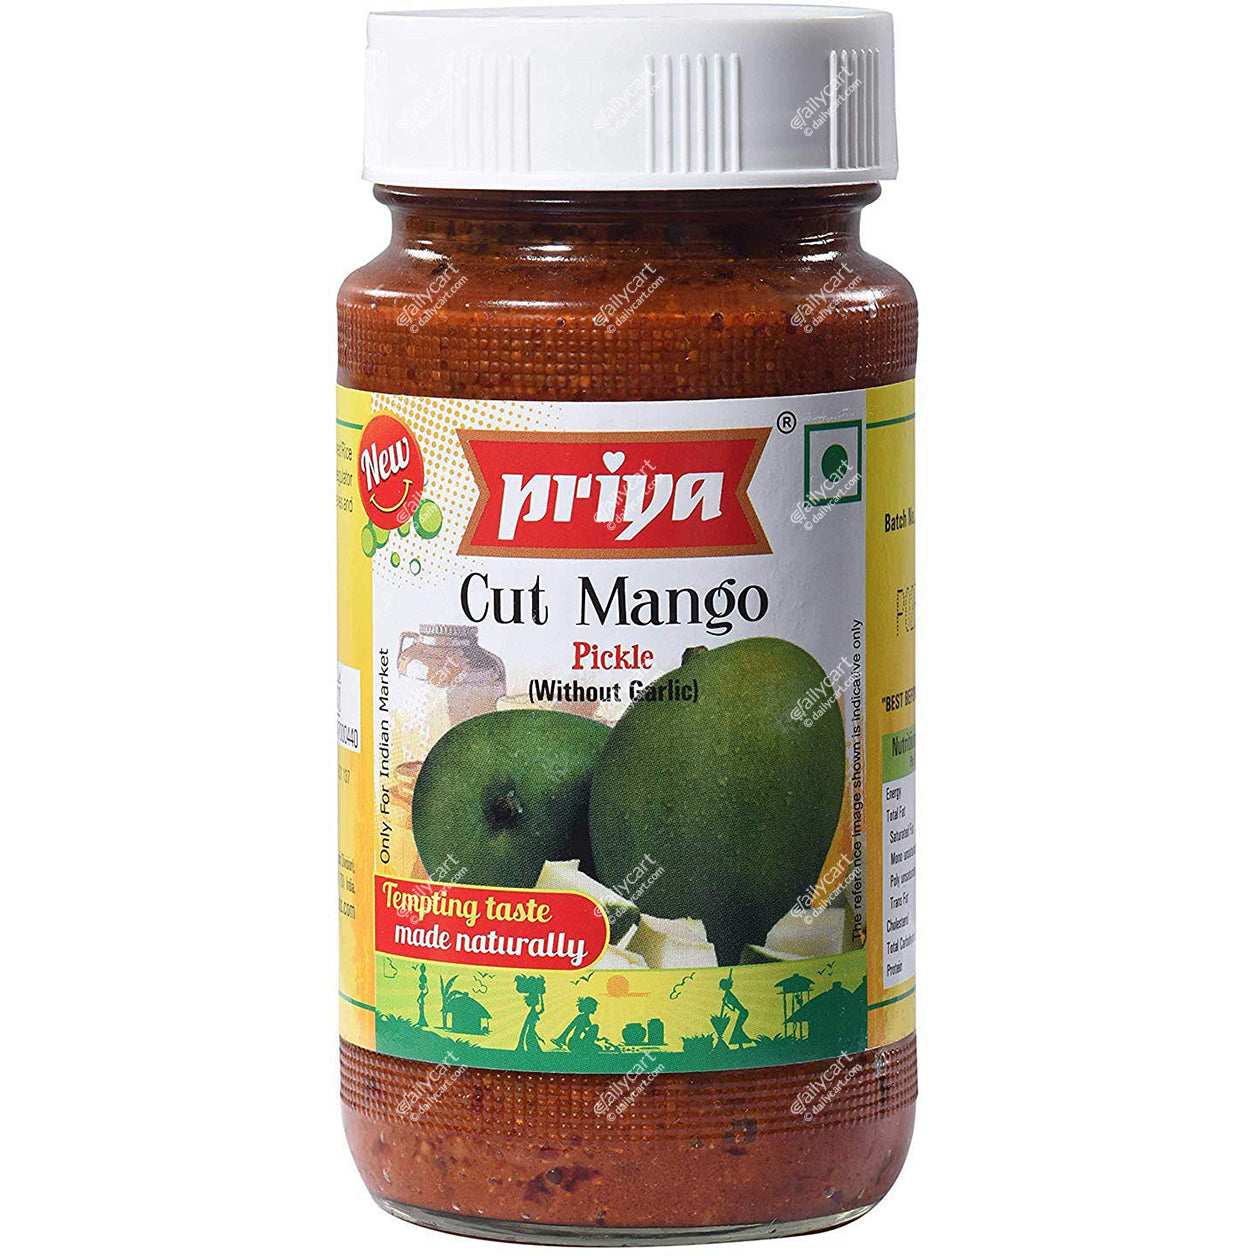 Priya Mango Cut Pickle With Garlic, 300 g